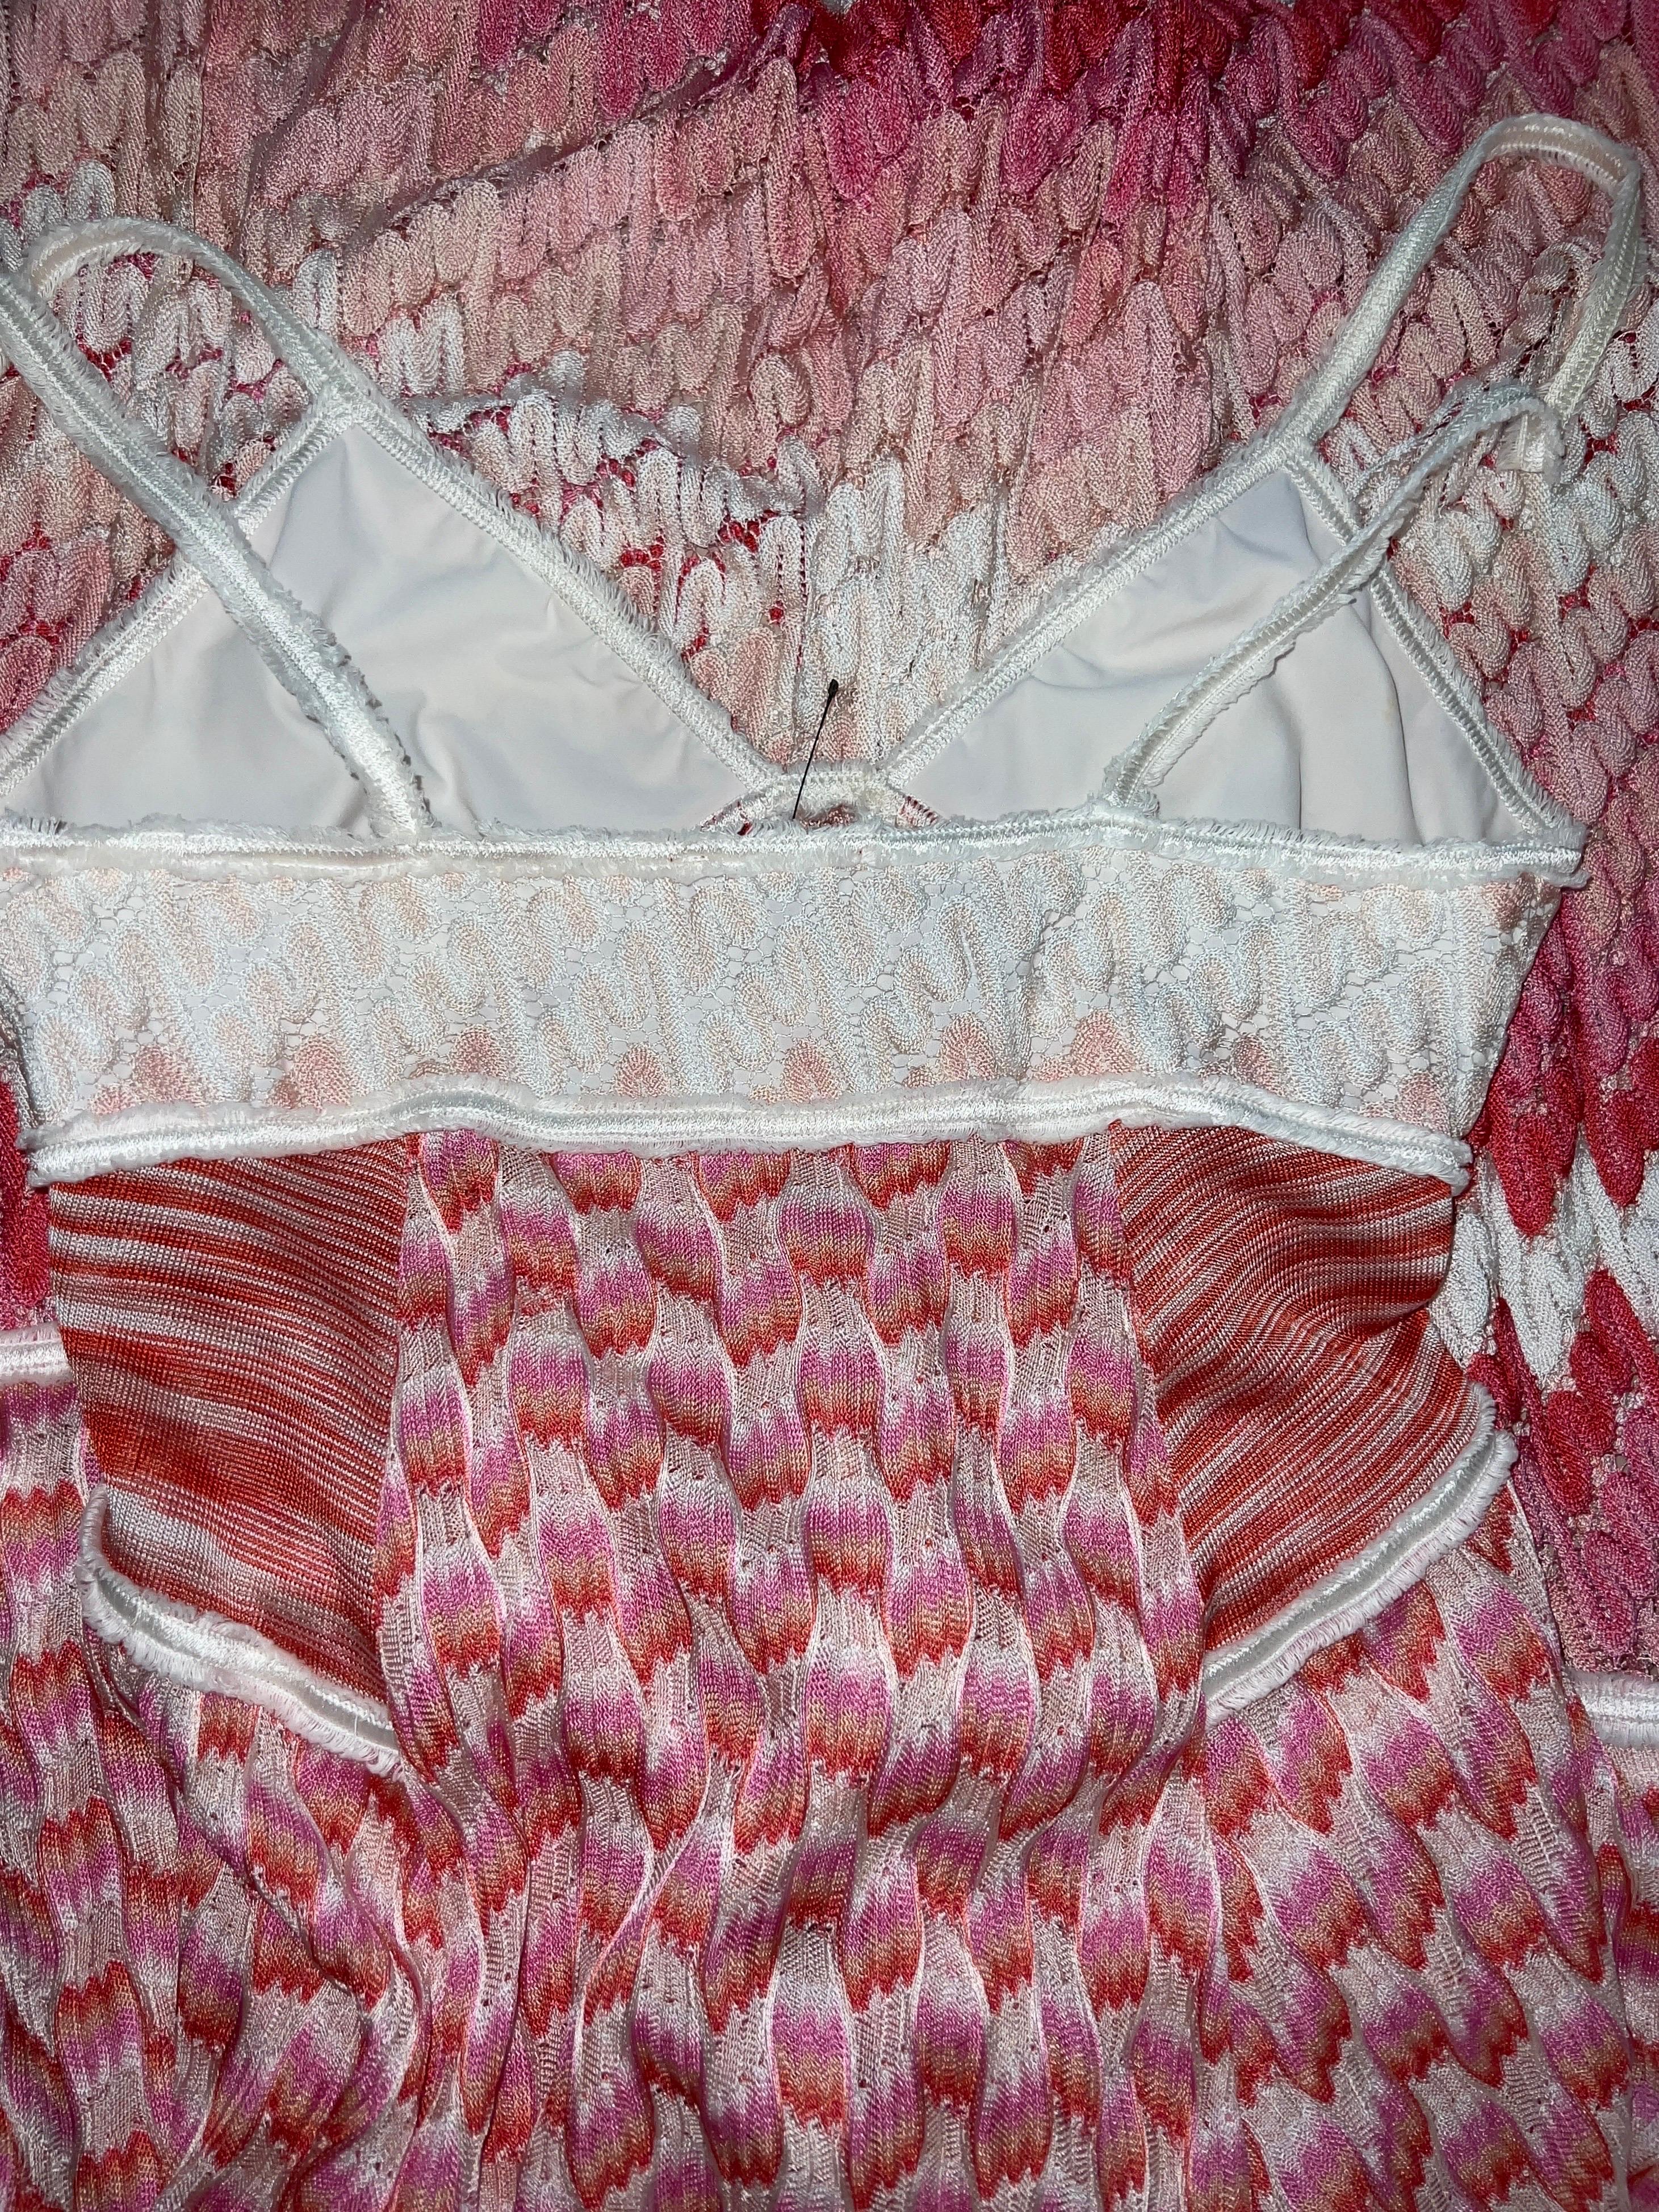 Missoni Crochet Knit Maxi Dress Pink Shades with Peek-a-boo Detail 42 2